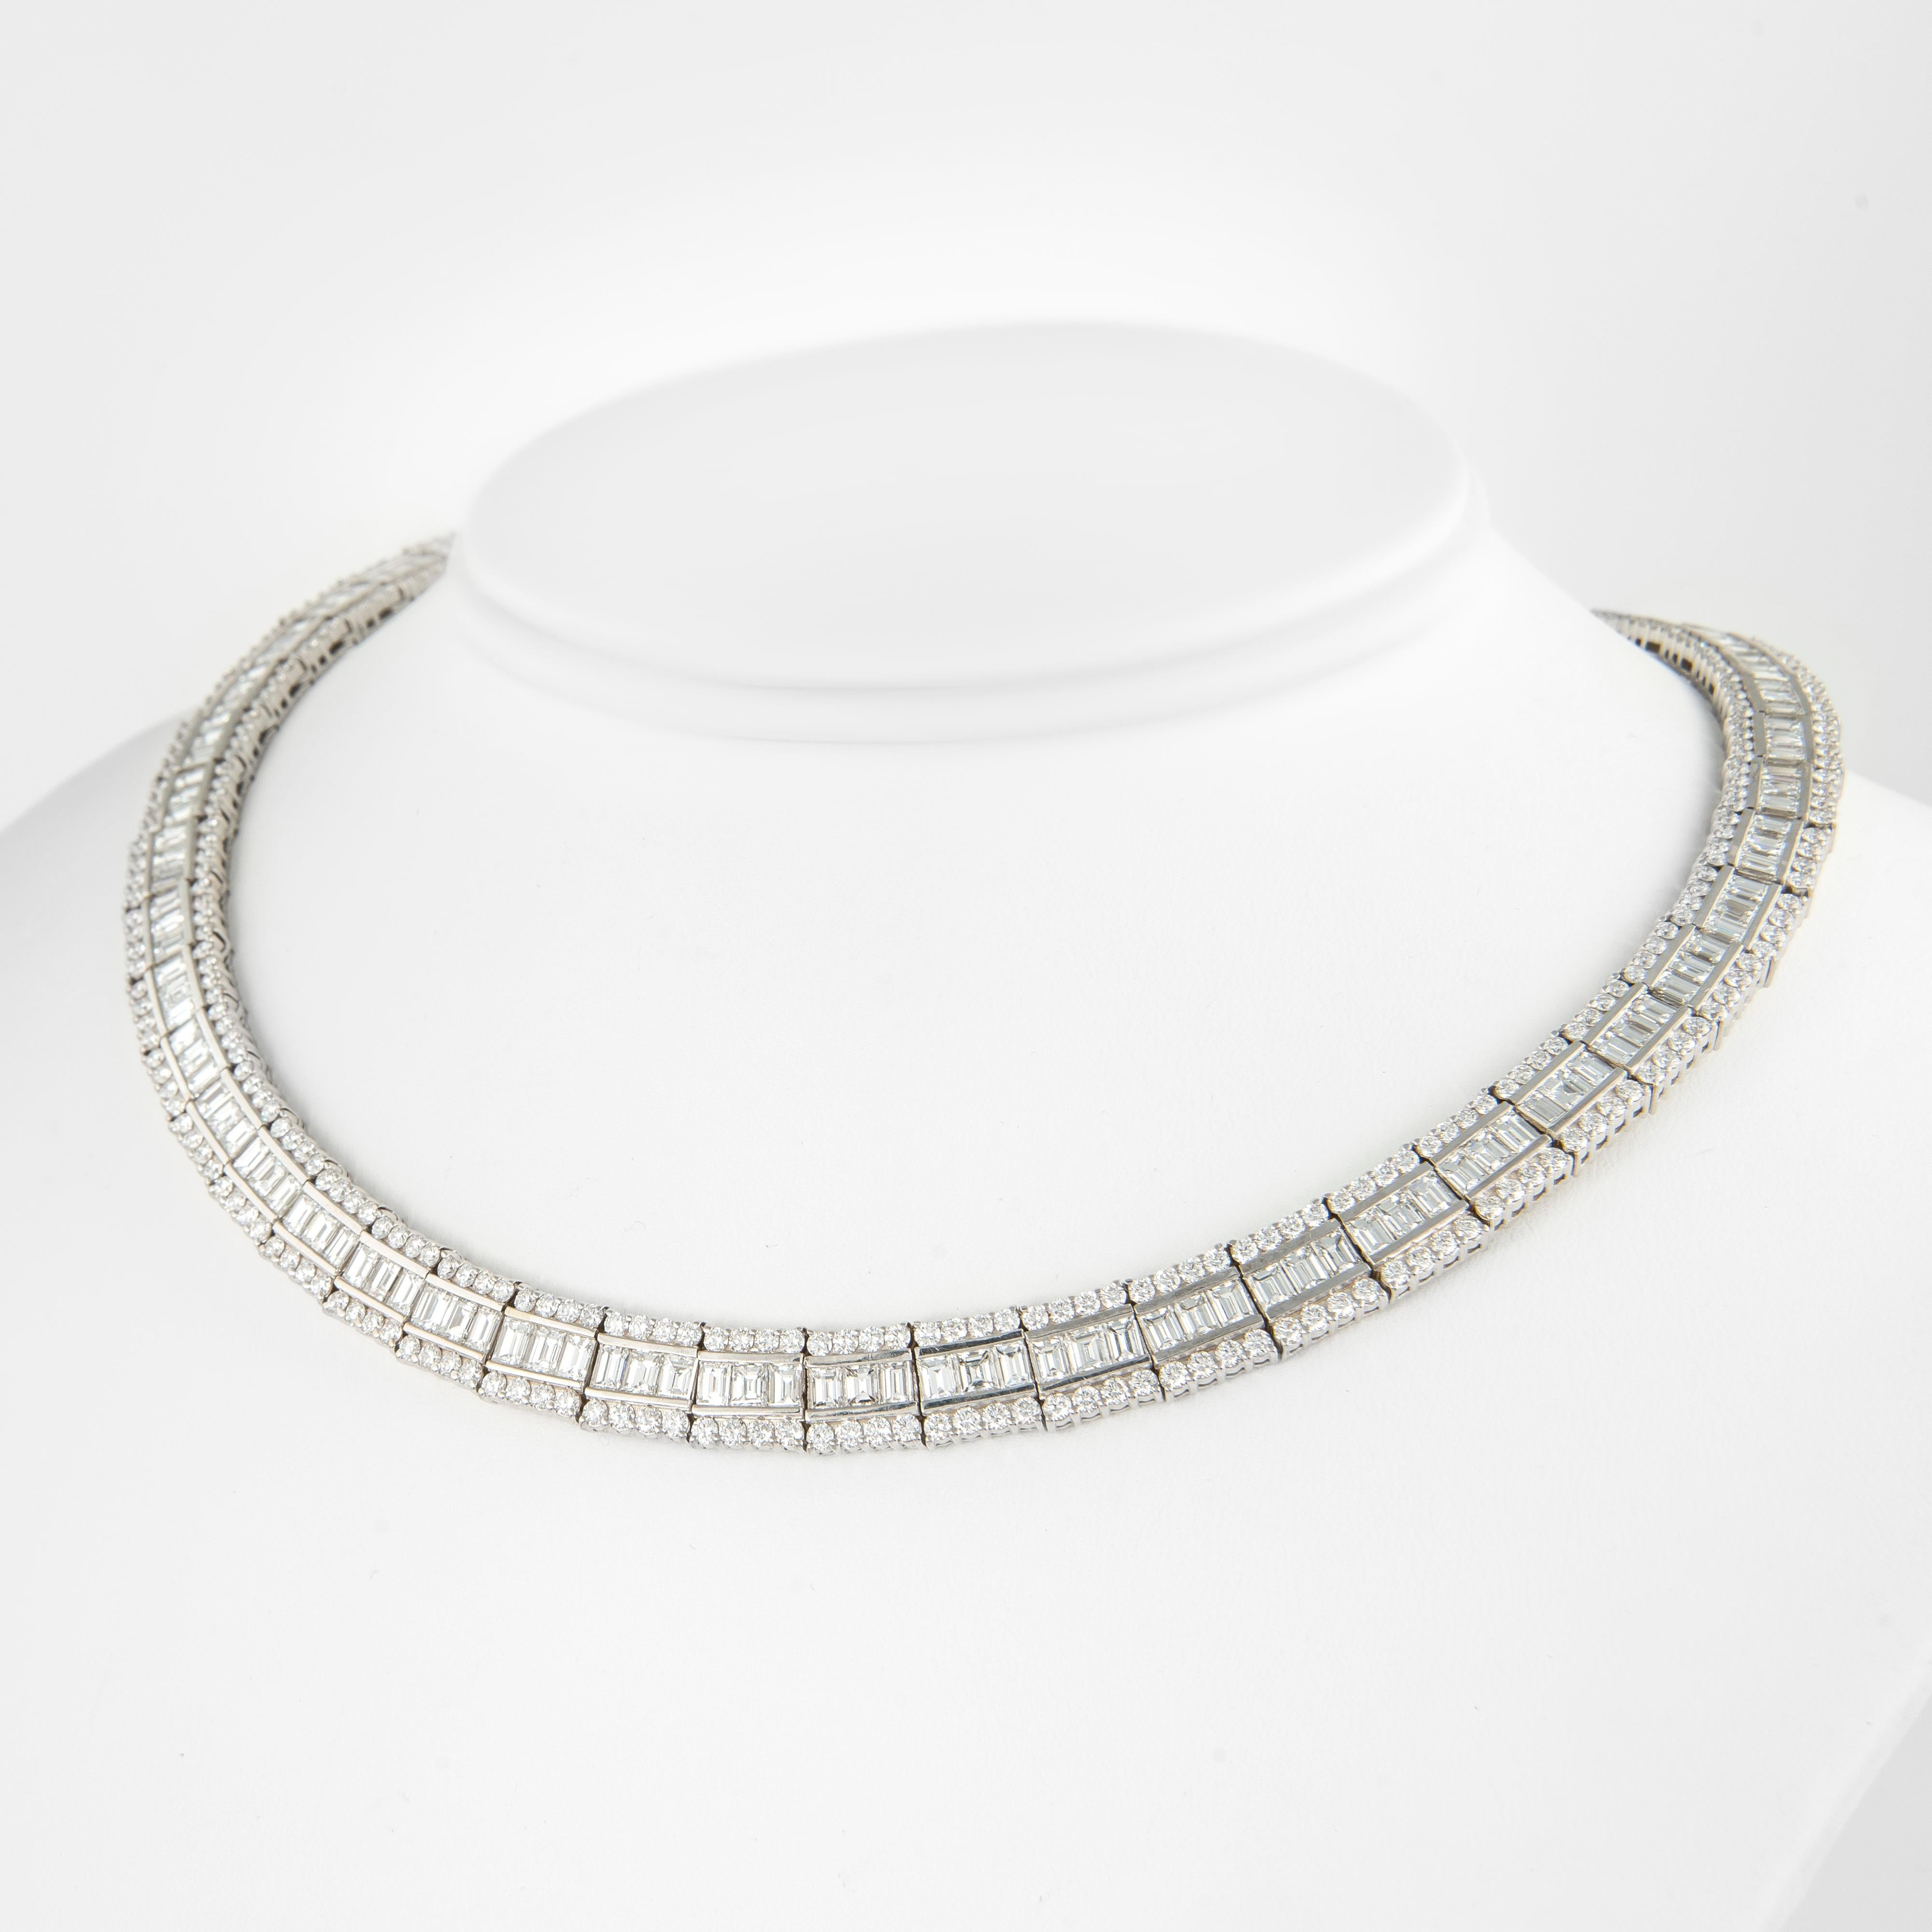 Contemporary Alexander 31.73 Carat Baguette Cut Diamond 18 Karat White Gold Necklace For Sale